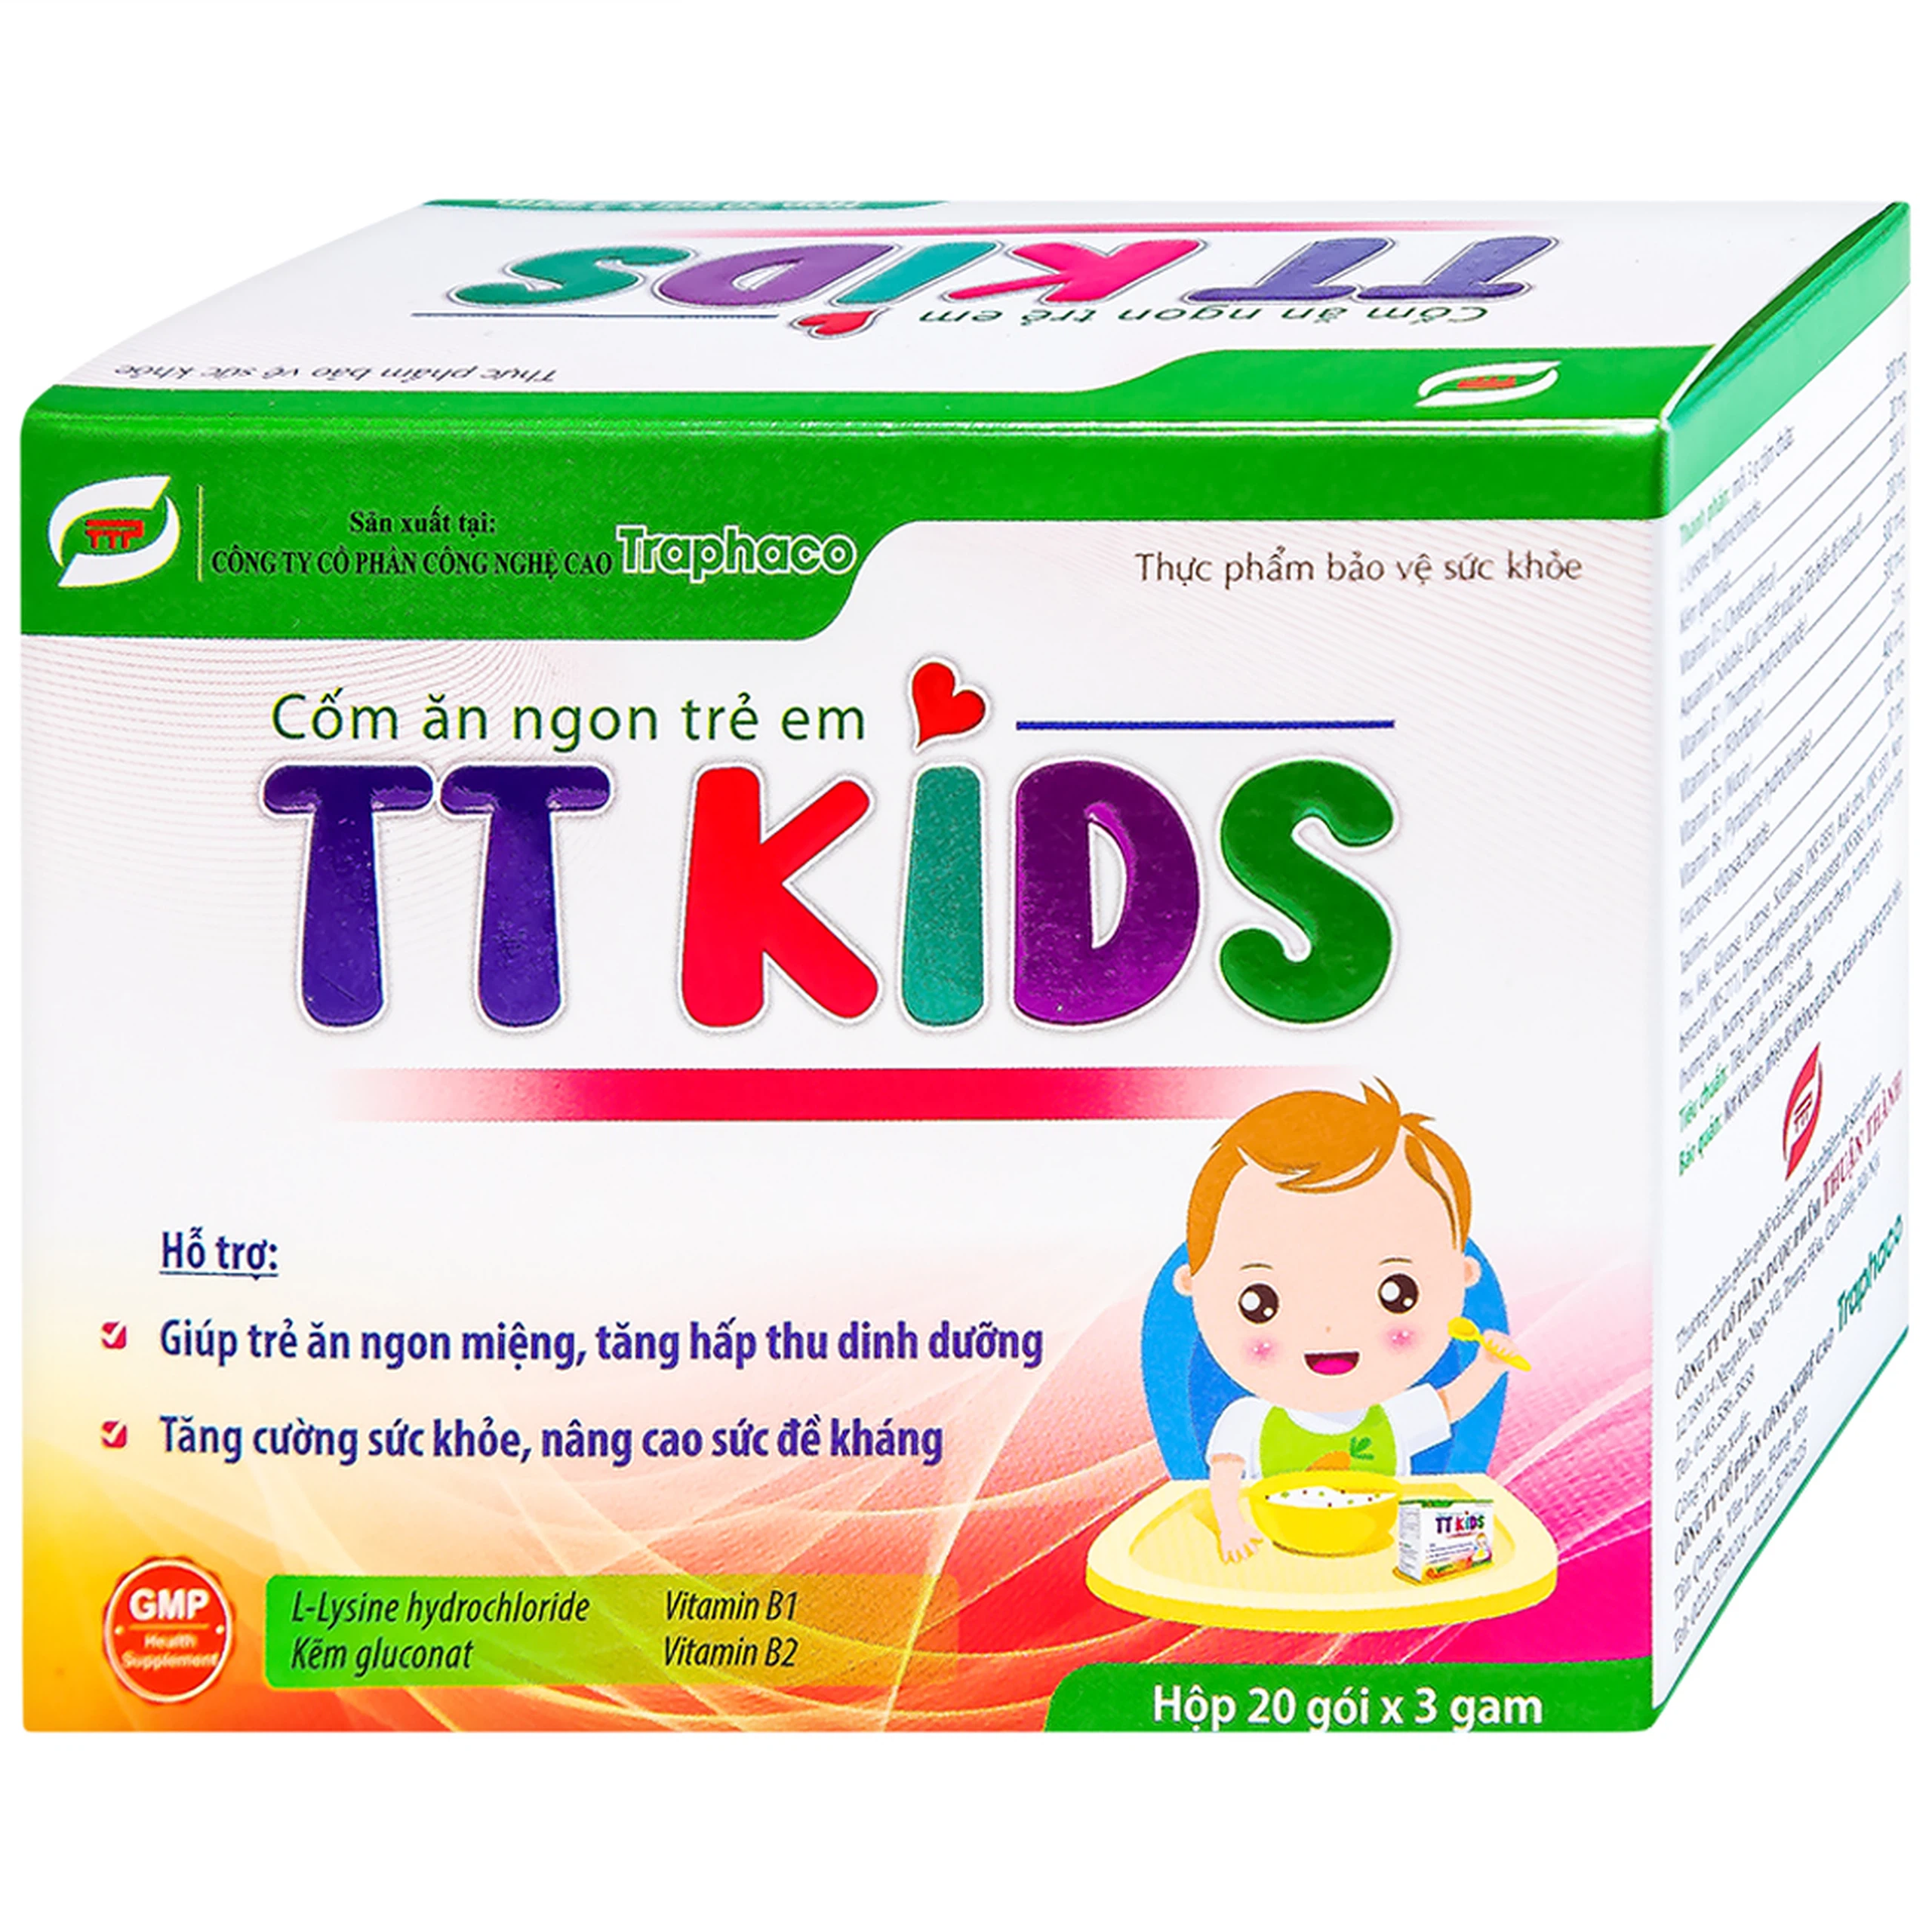 Cốm ăn ngon trẻ em TT KIDS Traphaco hỗ trợ tăng hấp thu dinh dưỡng, tăng cường sức khỏe (20 gói x 3g)